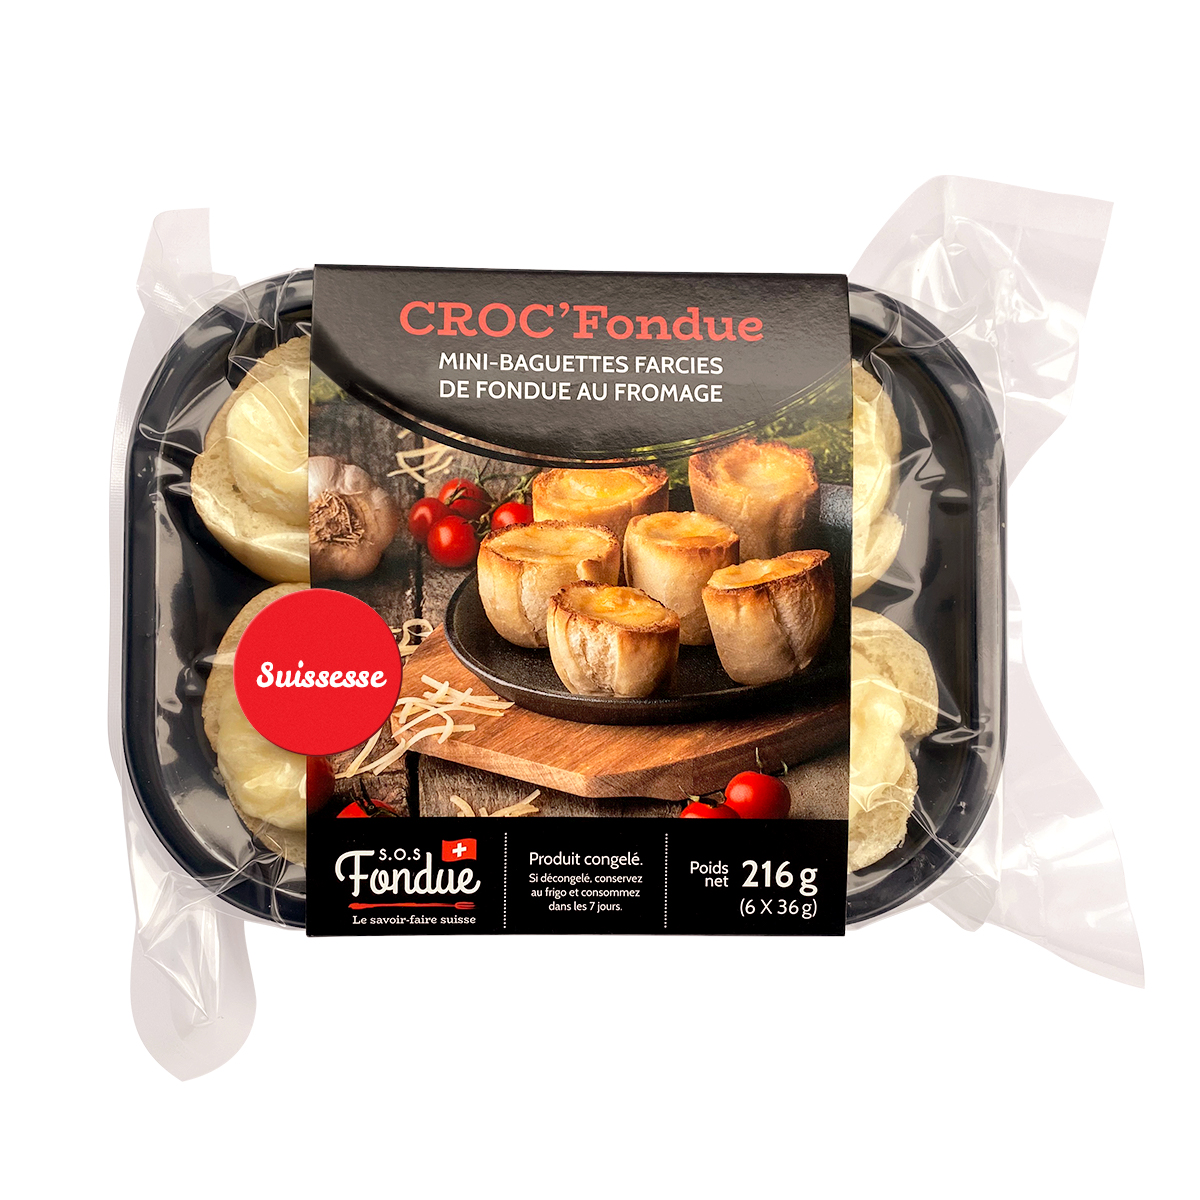 Croc'Fondue : Mini-baguettes farcies de fondue au fromage